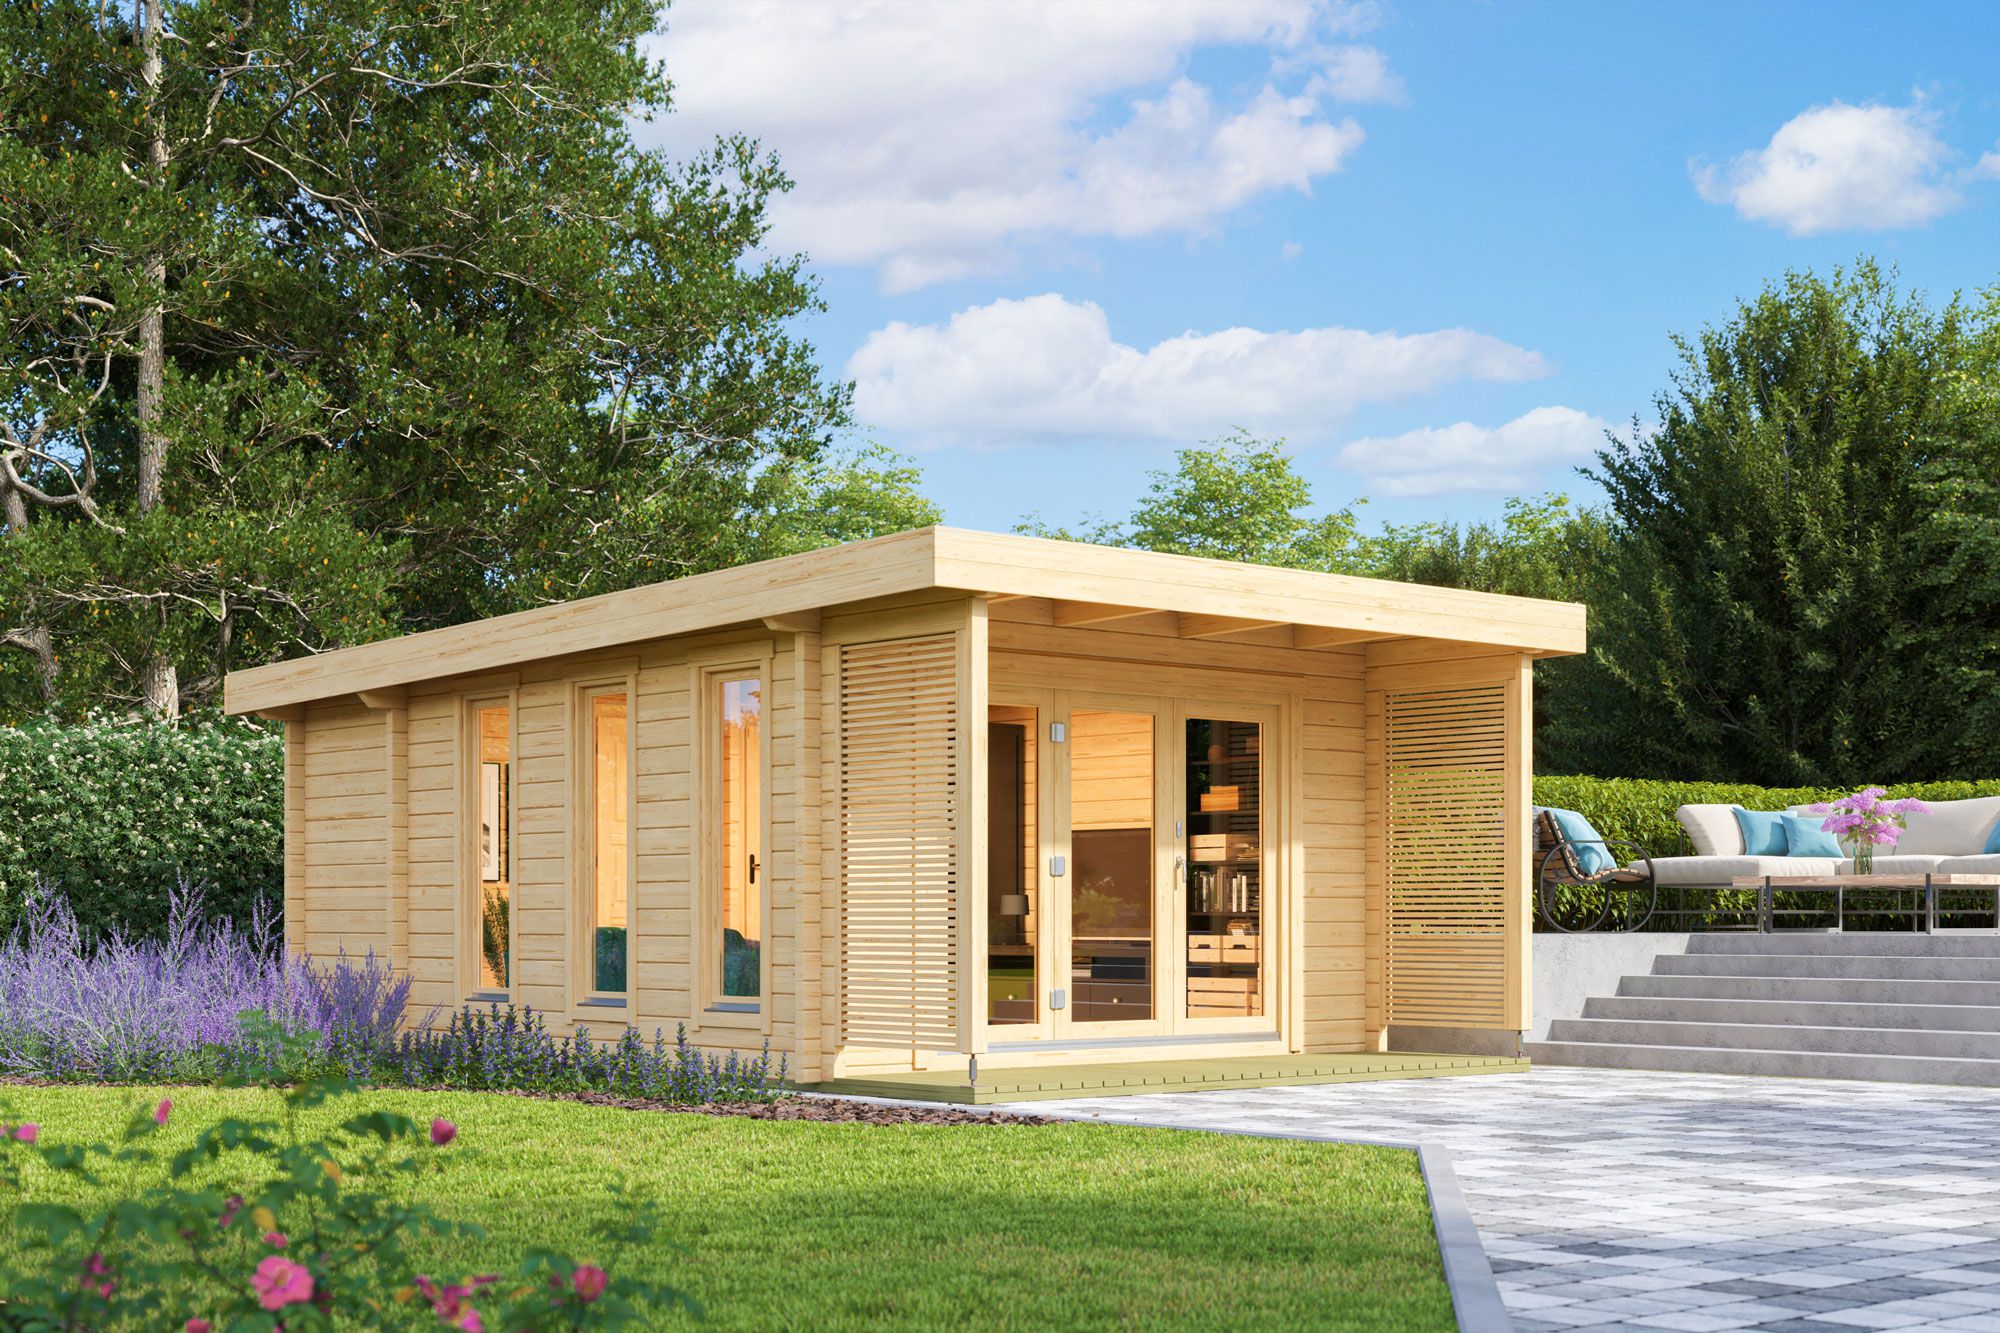 Vakantiehuis F24 met terras | 19,18 m² | 70 mm houtblokken | Natuurlijke afwerking | Incl. vloerbedekking & isolerende beglazing